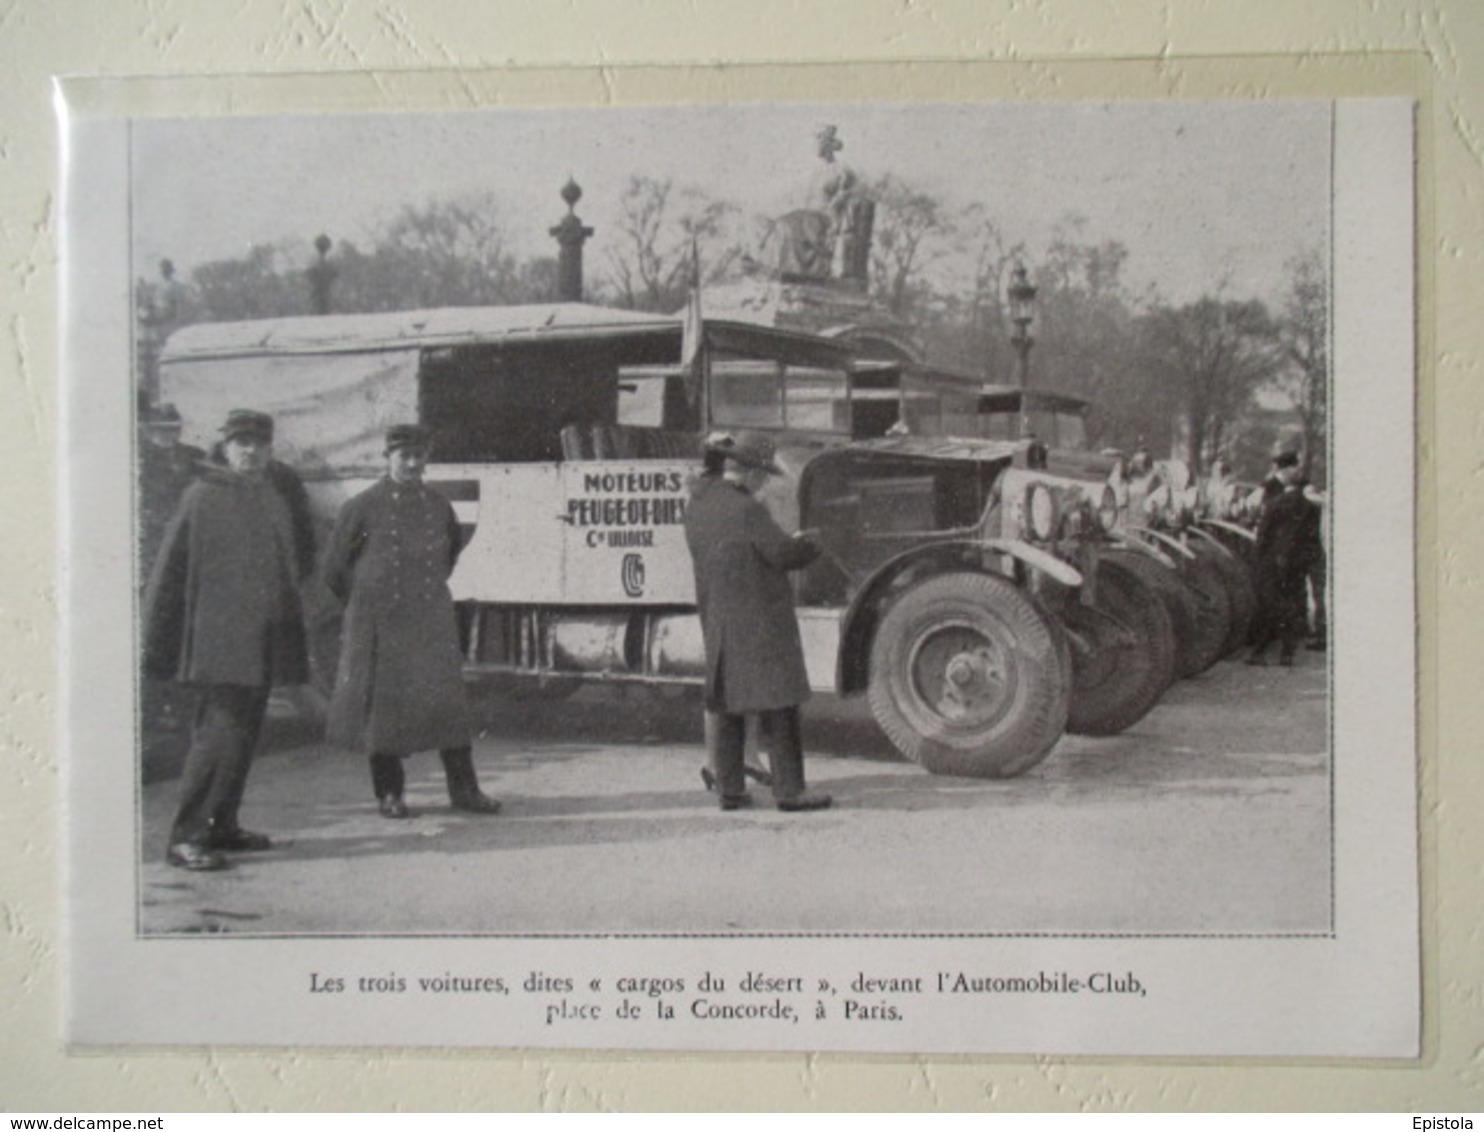 Paris - Départ Du Raid Transafricain  (Cie Lilloise)  En Camion Peugeot Diesel  - Coupure De Presse De 1931 - Camion